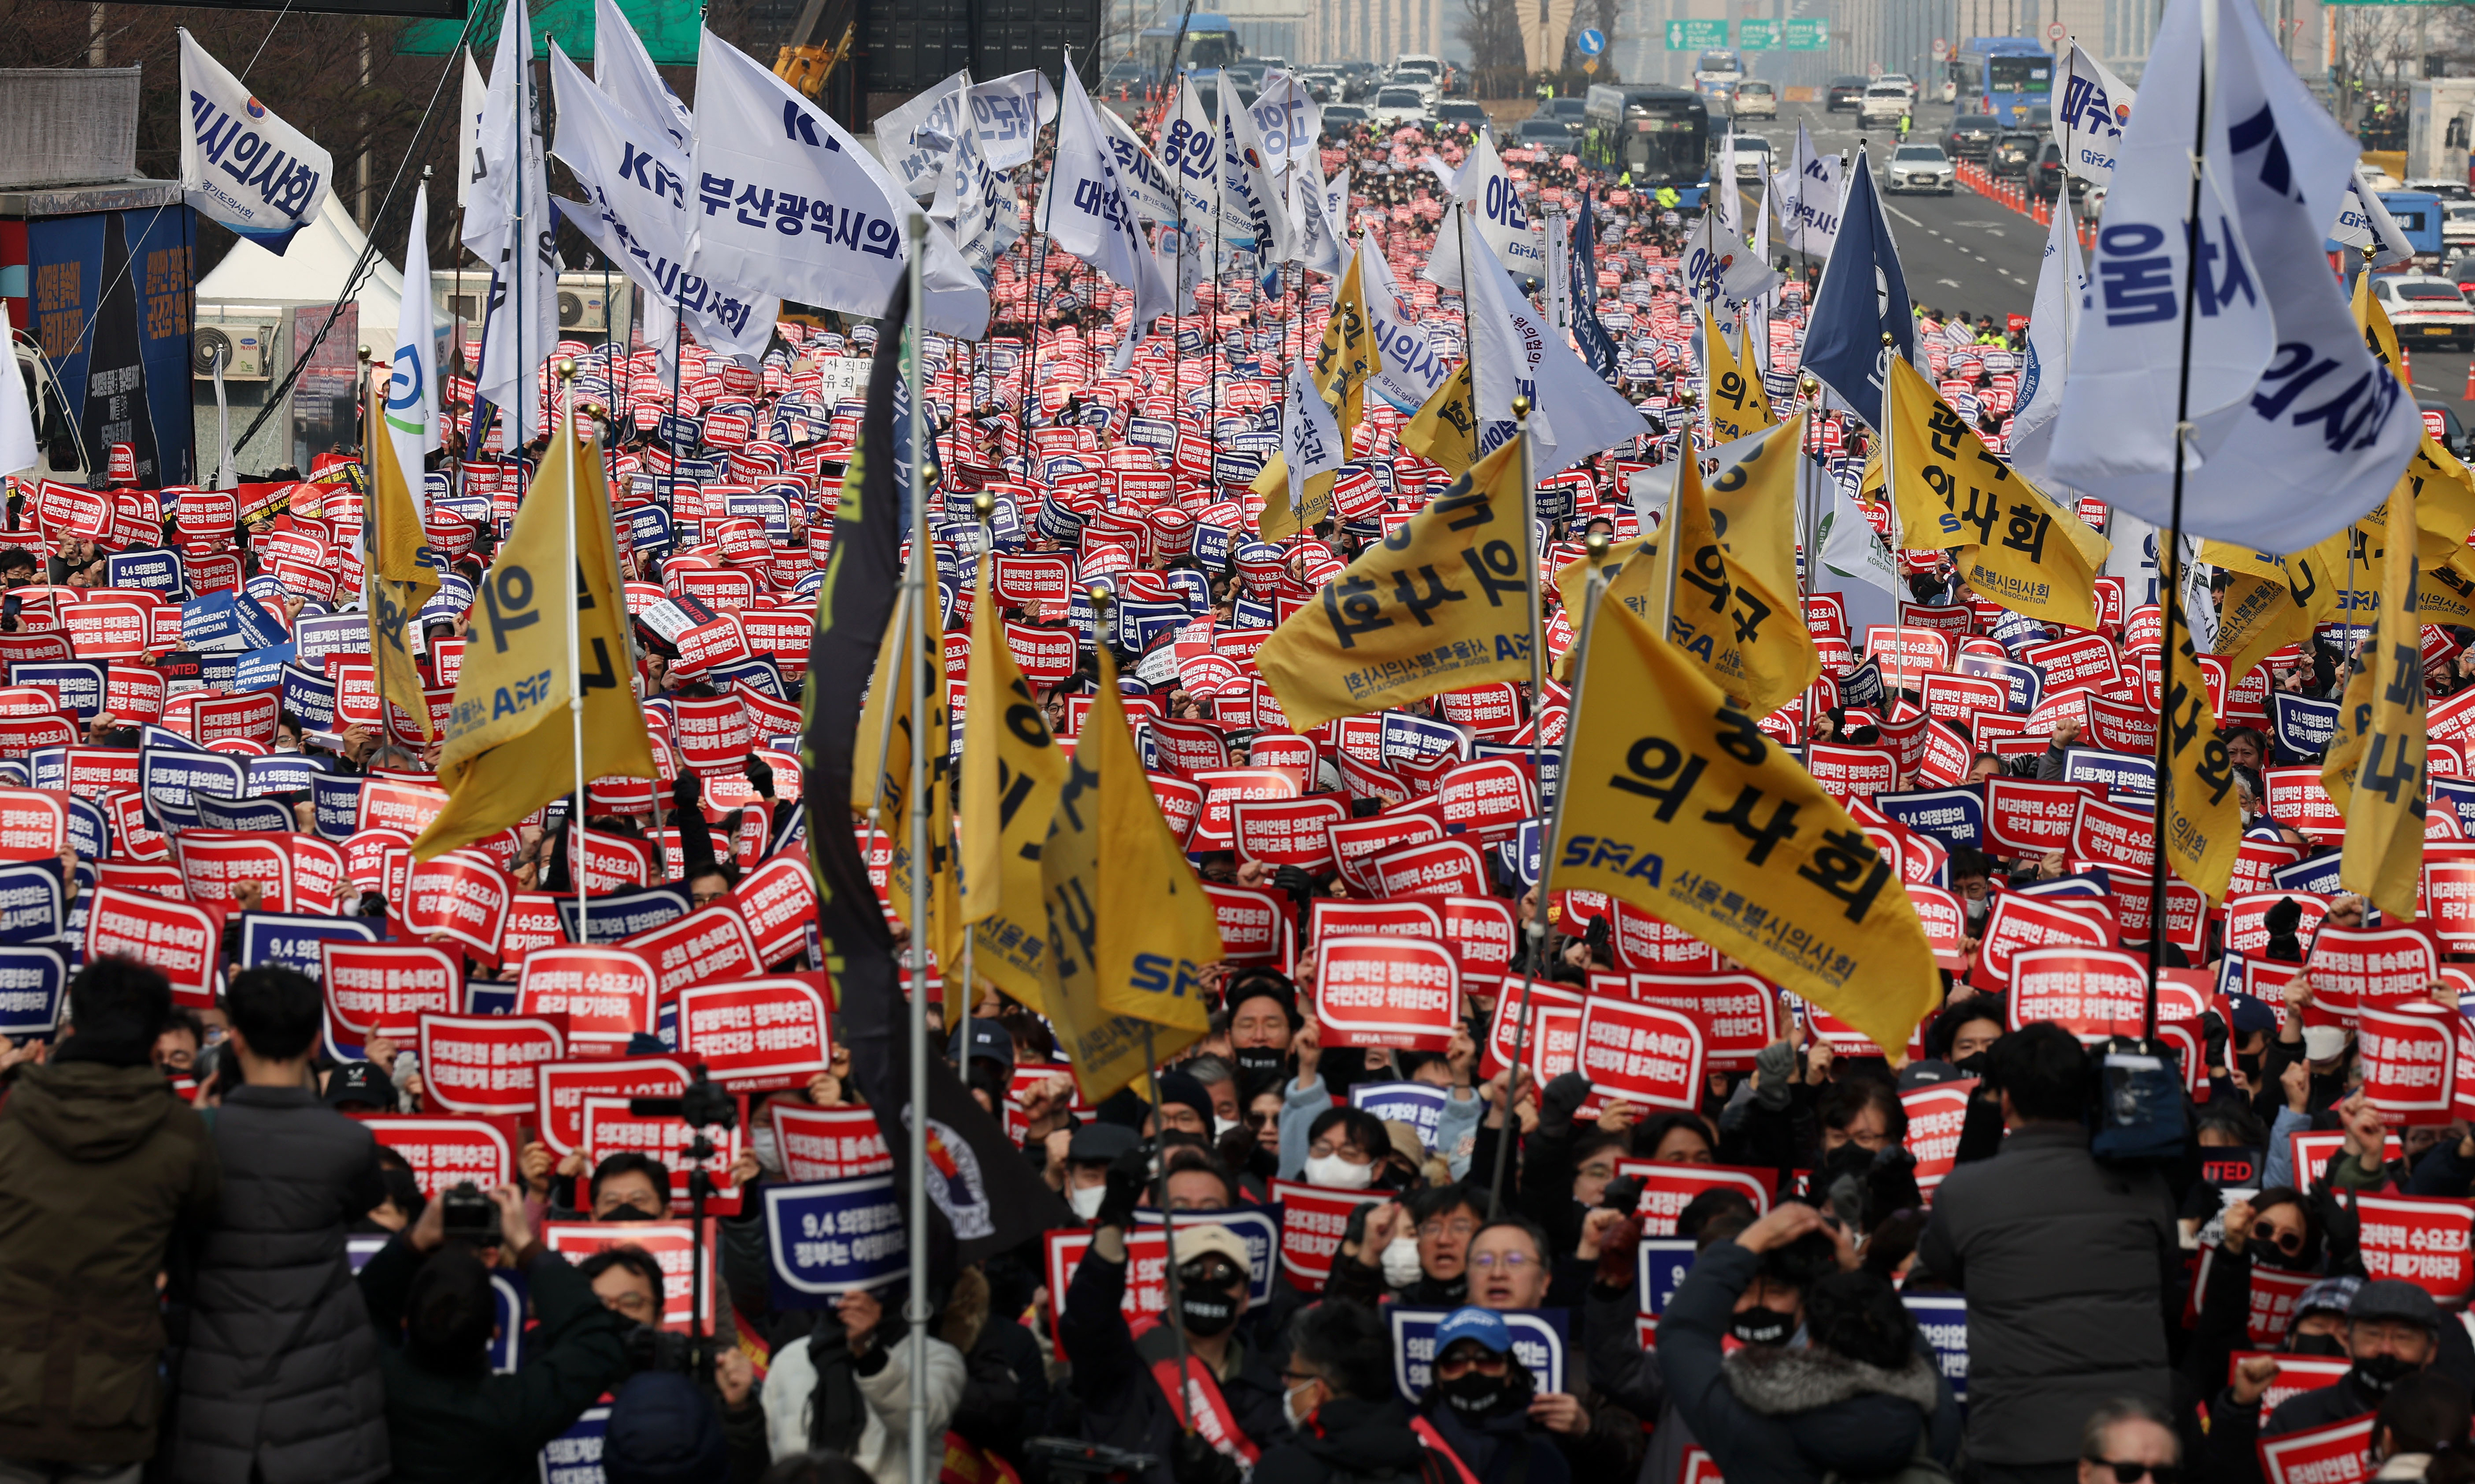 3일 서울 영등포구 여의대로에서 열린 의대 정원 증원 및 필수 의료 패키지 저지를 위한 전국 의사 총궐기 대회에서 참석자들이 피켓을 들고 구호를 외치고 있다. 뉴시스